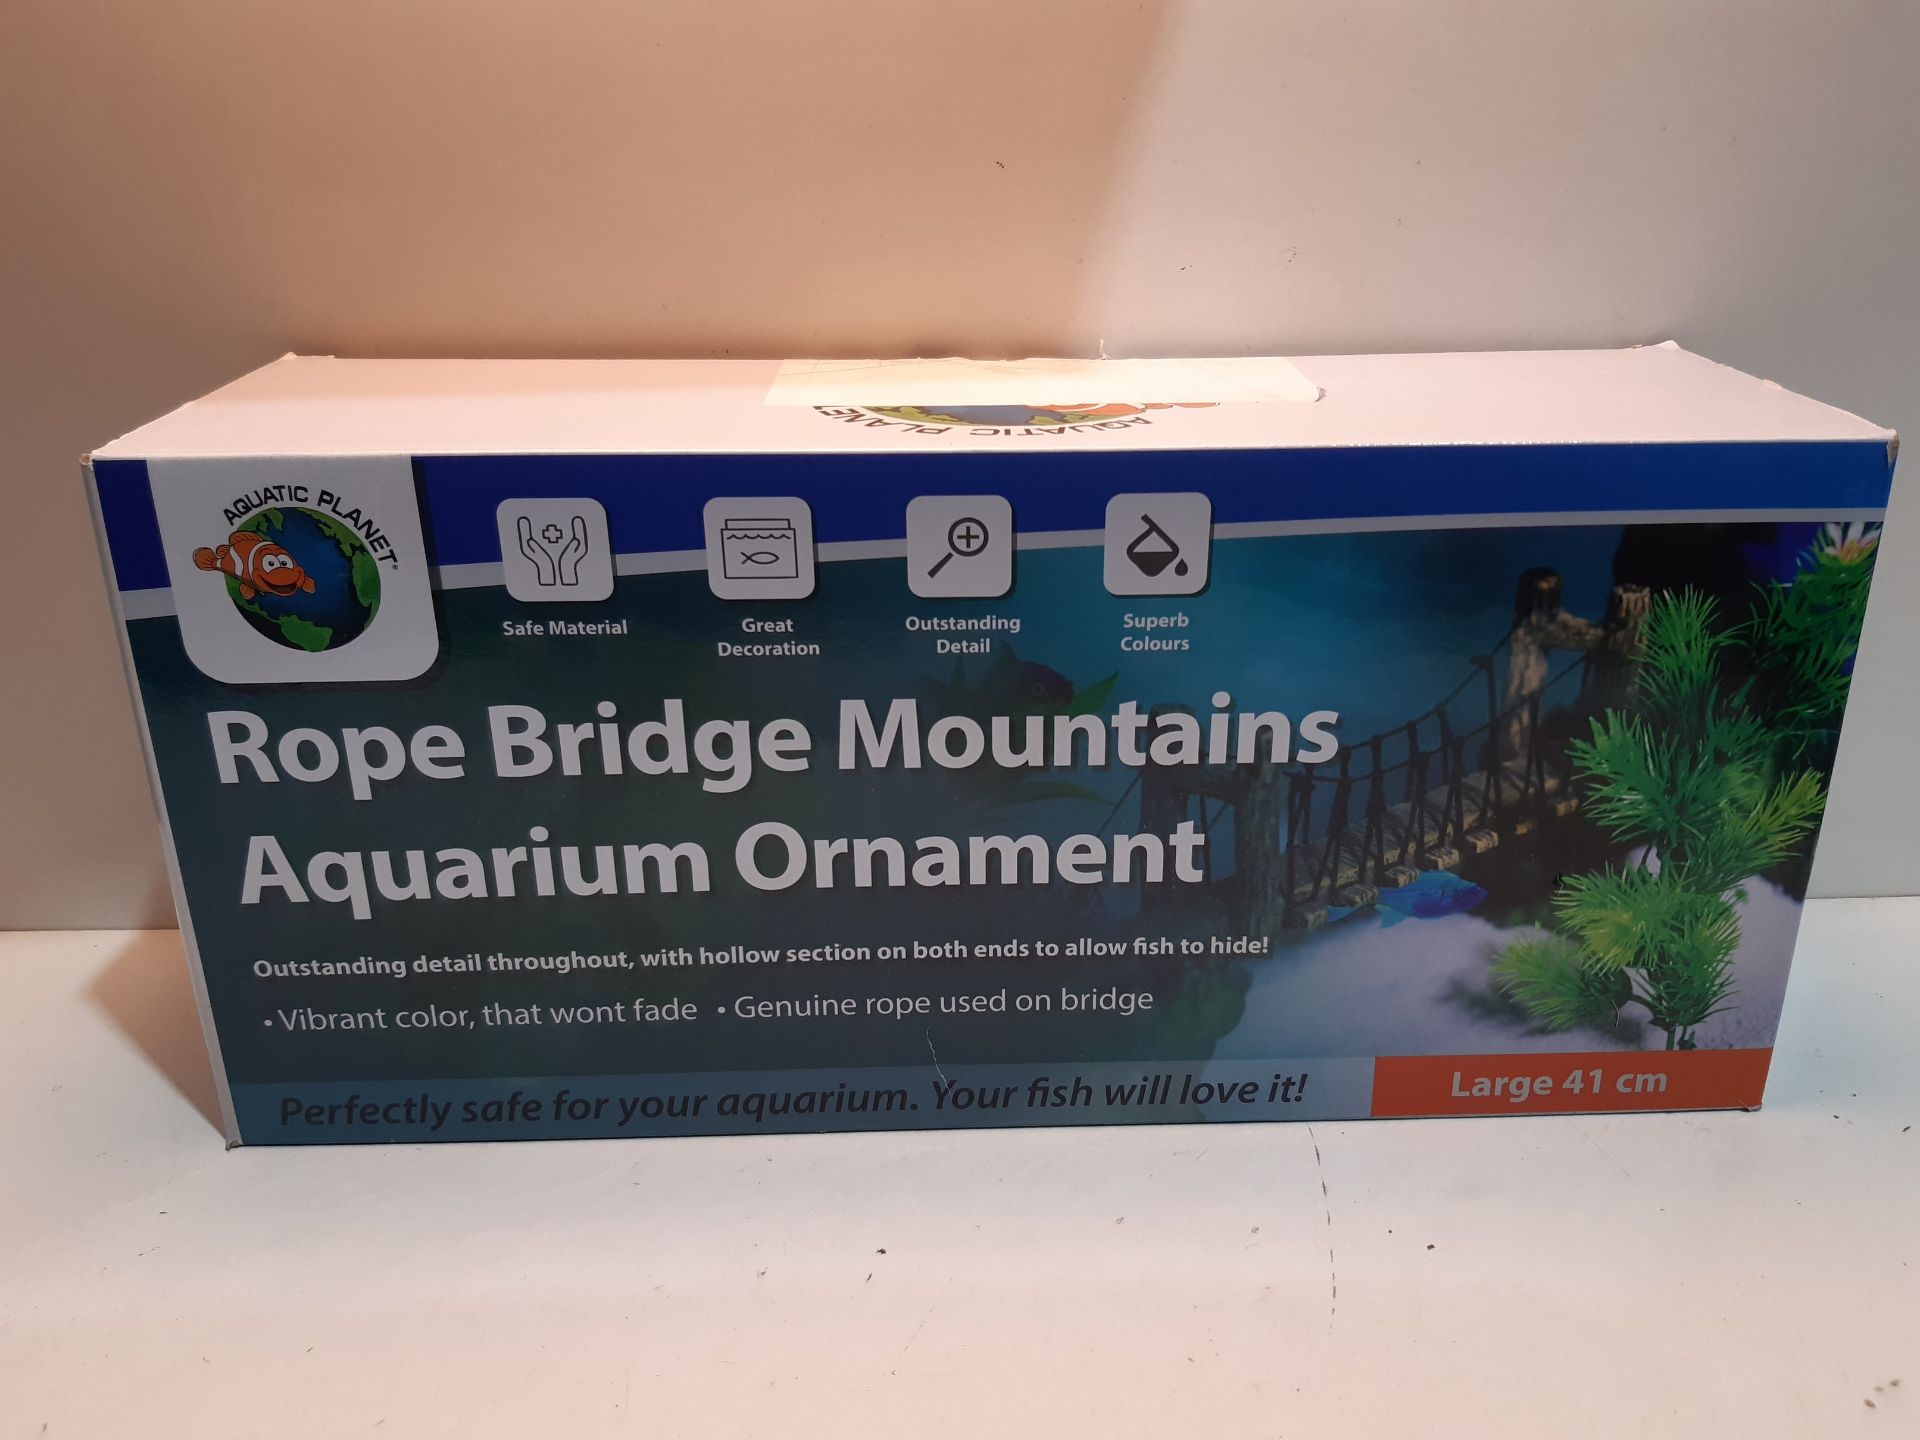 RRP £31.99 Aquatic Planet Rope Bridge Mountains Aquarium Fish - Image 2 of 2